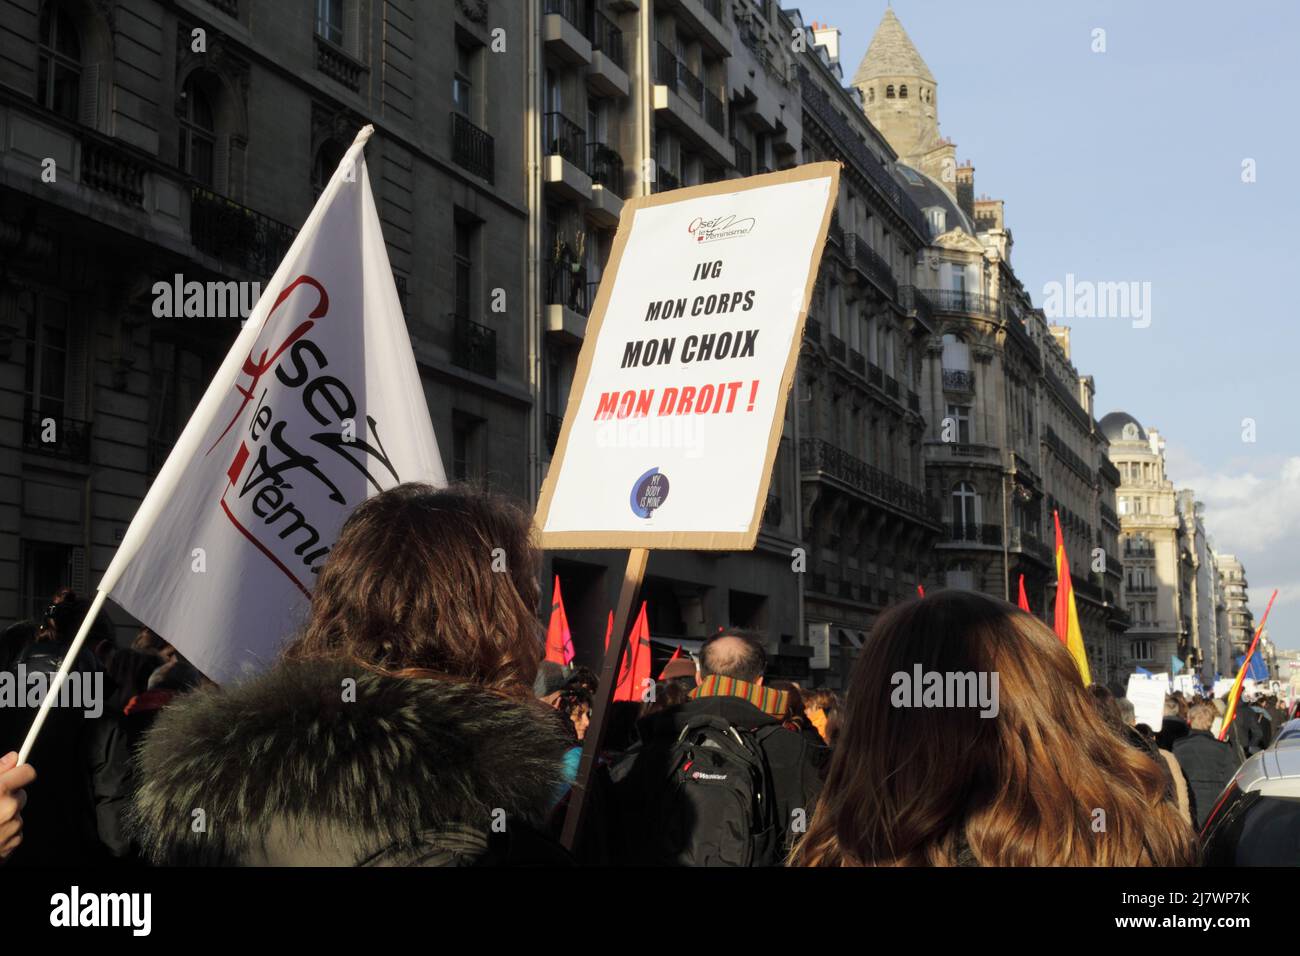 Parigi : manifestation contre le projet de loi anti-avortement en Espagne 01er février 2014. Panneau 'corpo IVG mon, choix mon, droit mon' Foto Stock